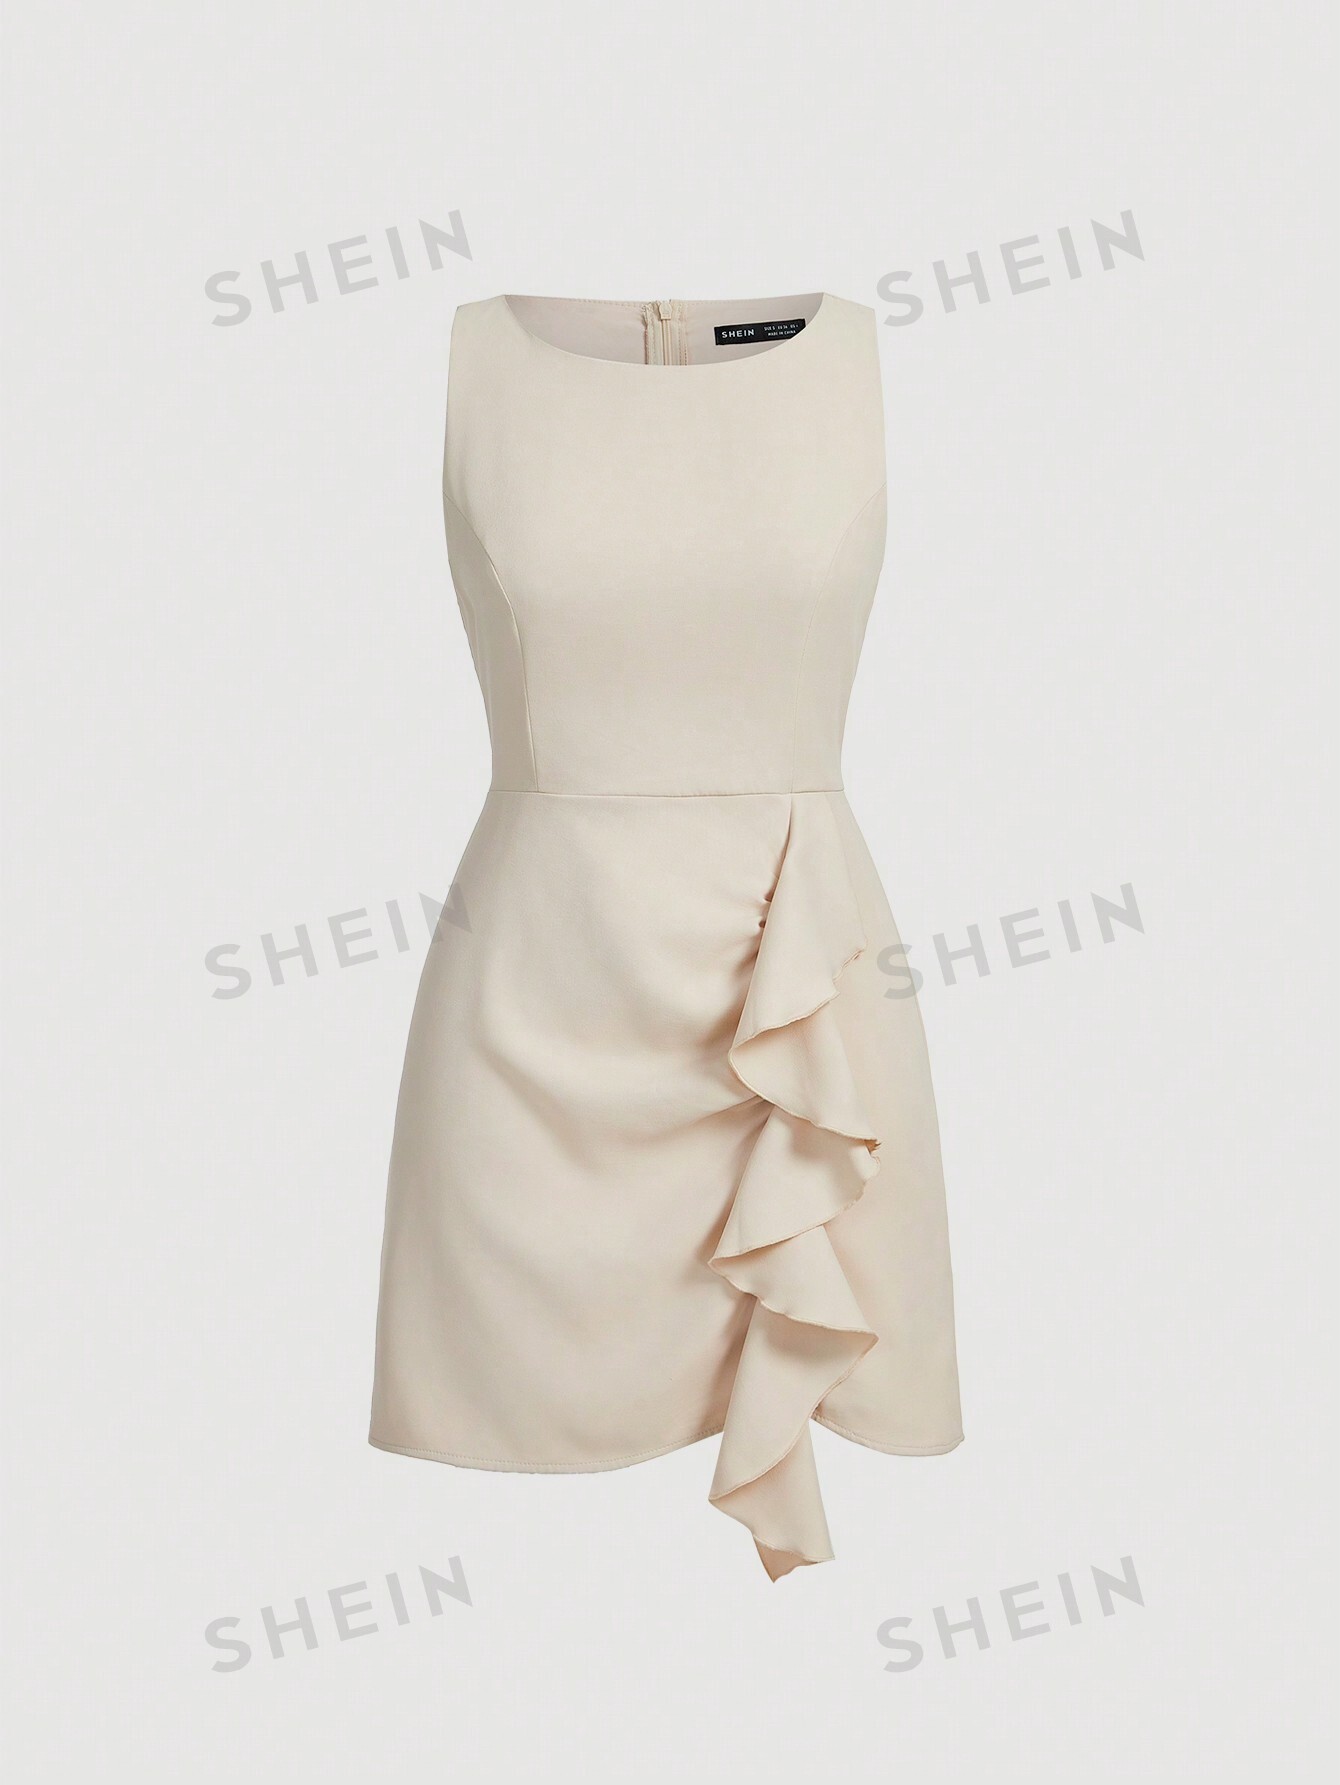 SHEIN MOD однотонное платье-жилет без рукавов с бретелькой на шее и рюшами, абрикос цена и фото